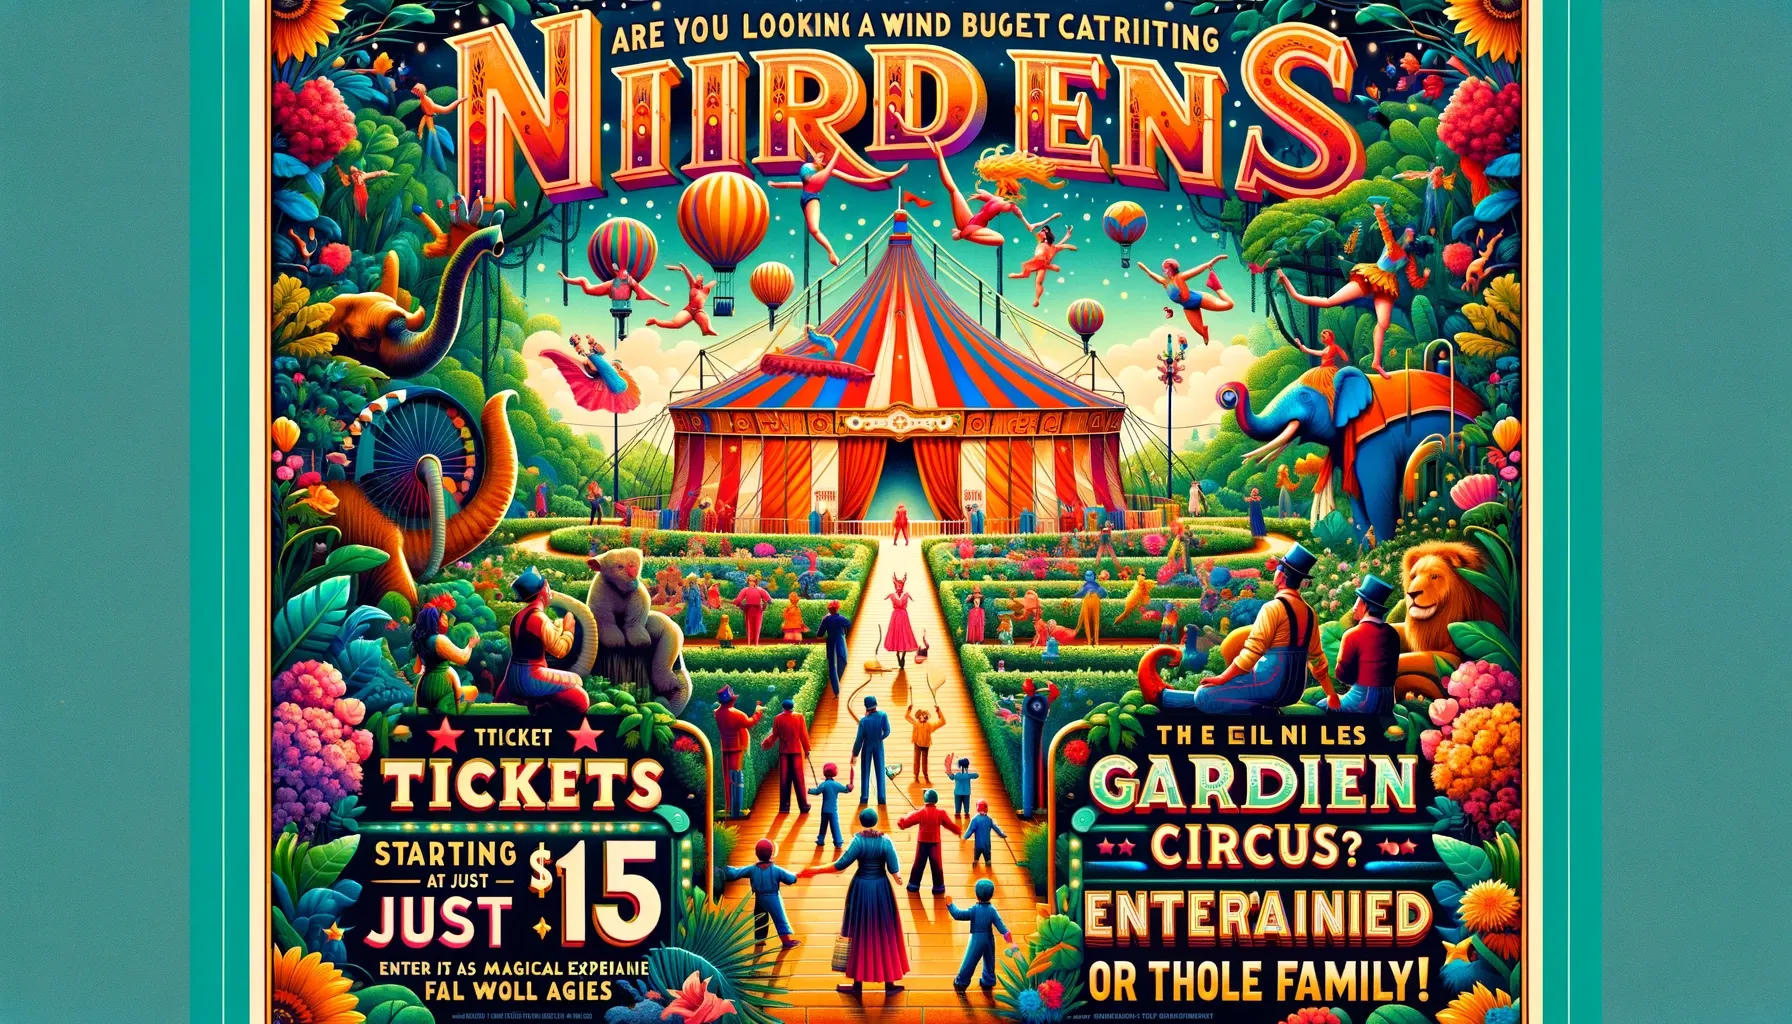 Niles Garden Circus Tickets